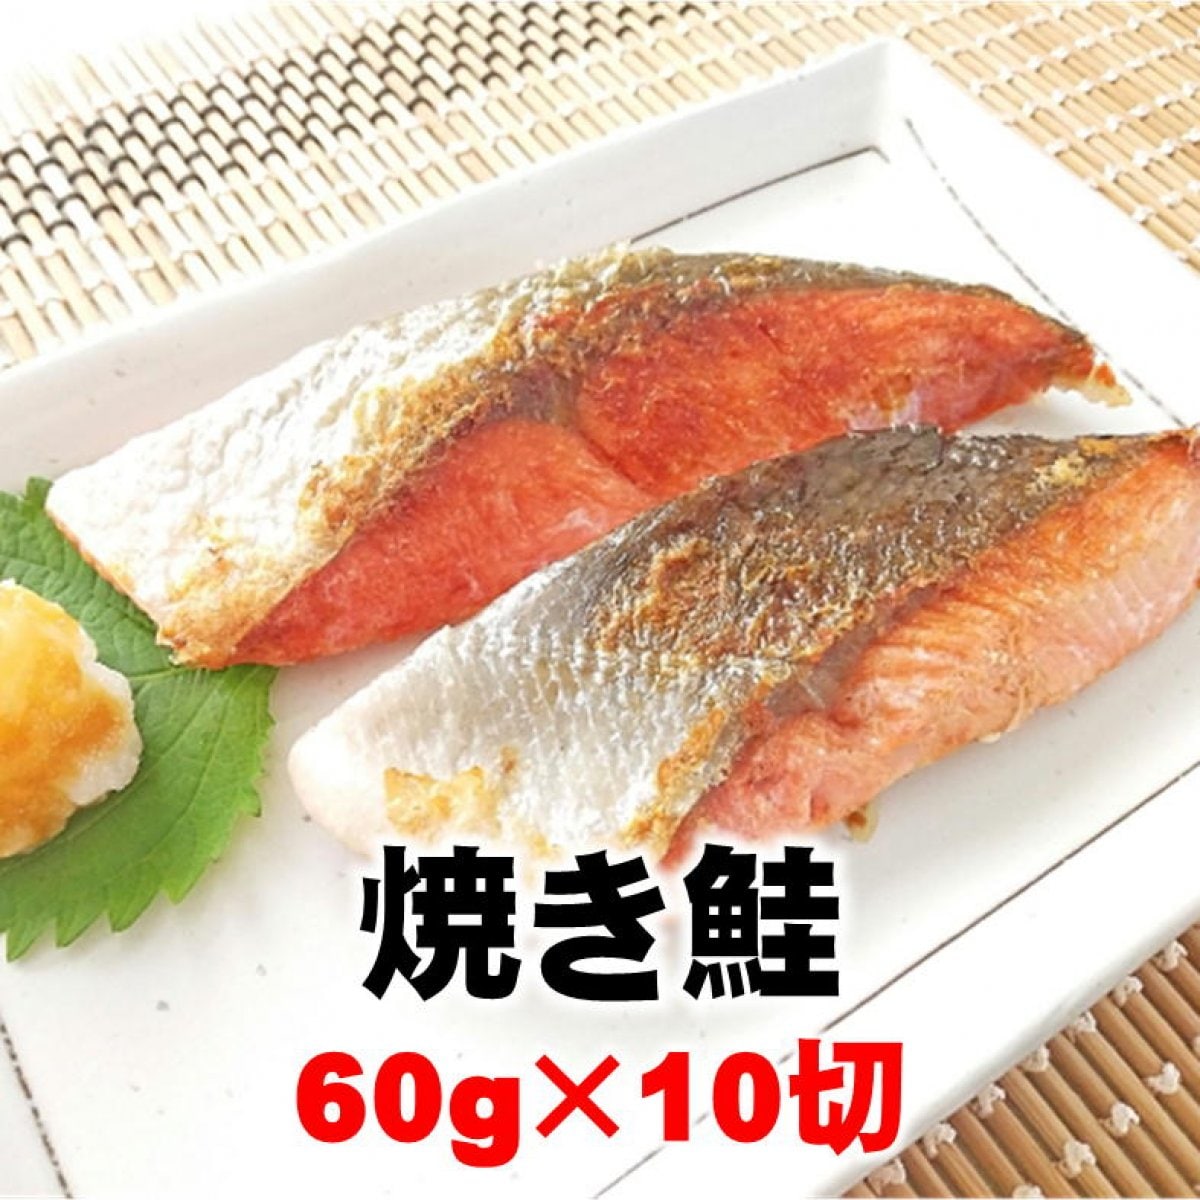 【訳あり処分】焼き鮭/10切/約60g/お弁当や朝食に